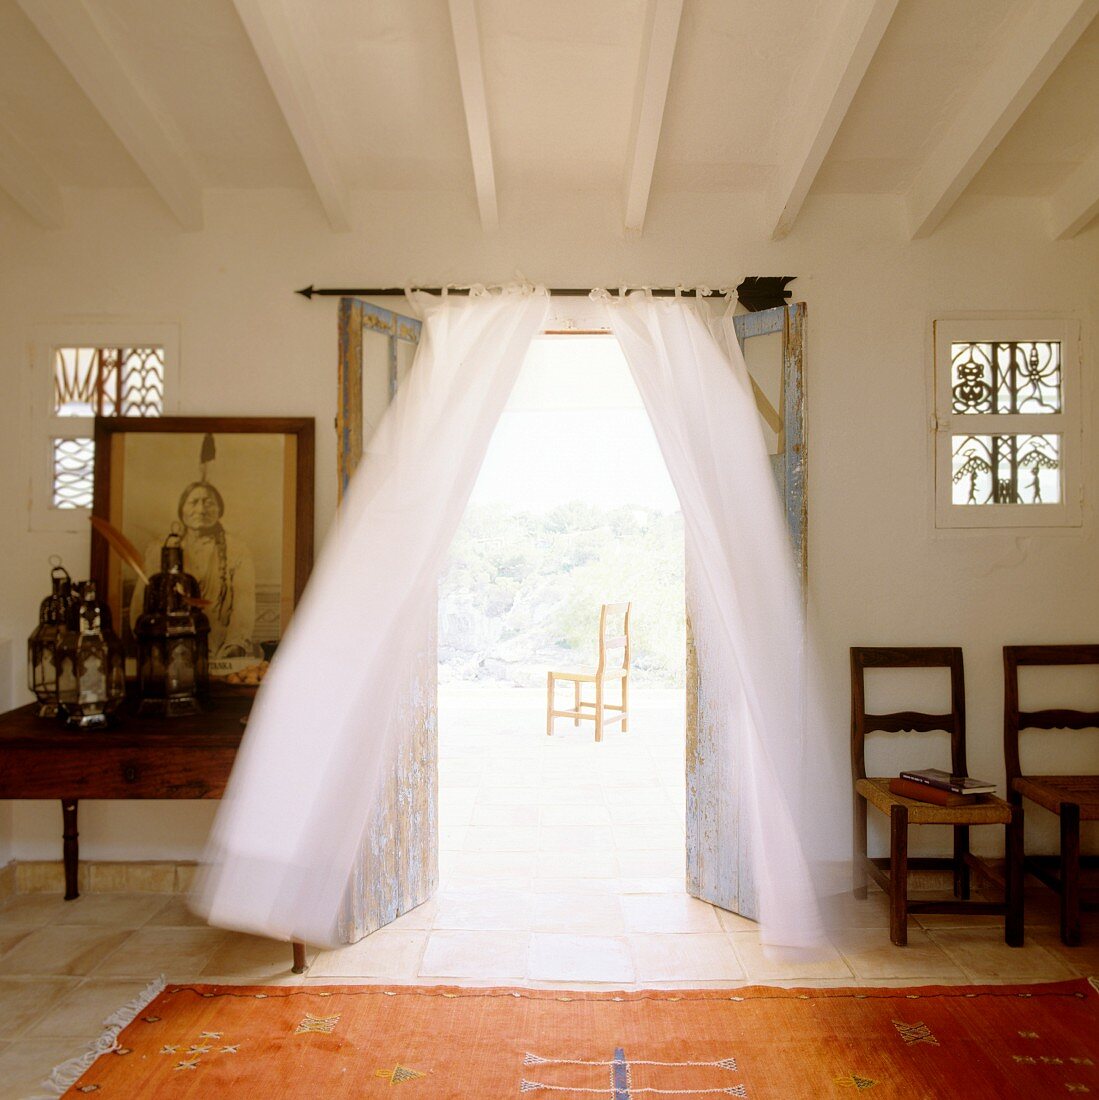 Folkloristischer Teppich vor offener Terrassentür mit luftigem Vorhang und Blick auf Stuhl in Freiem